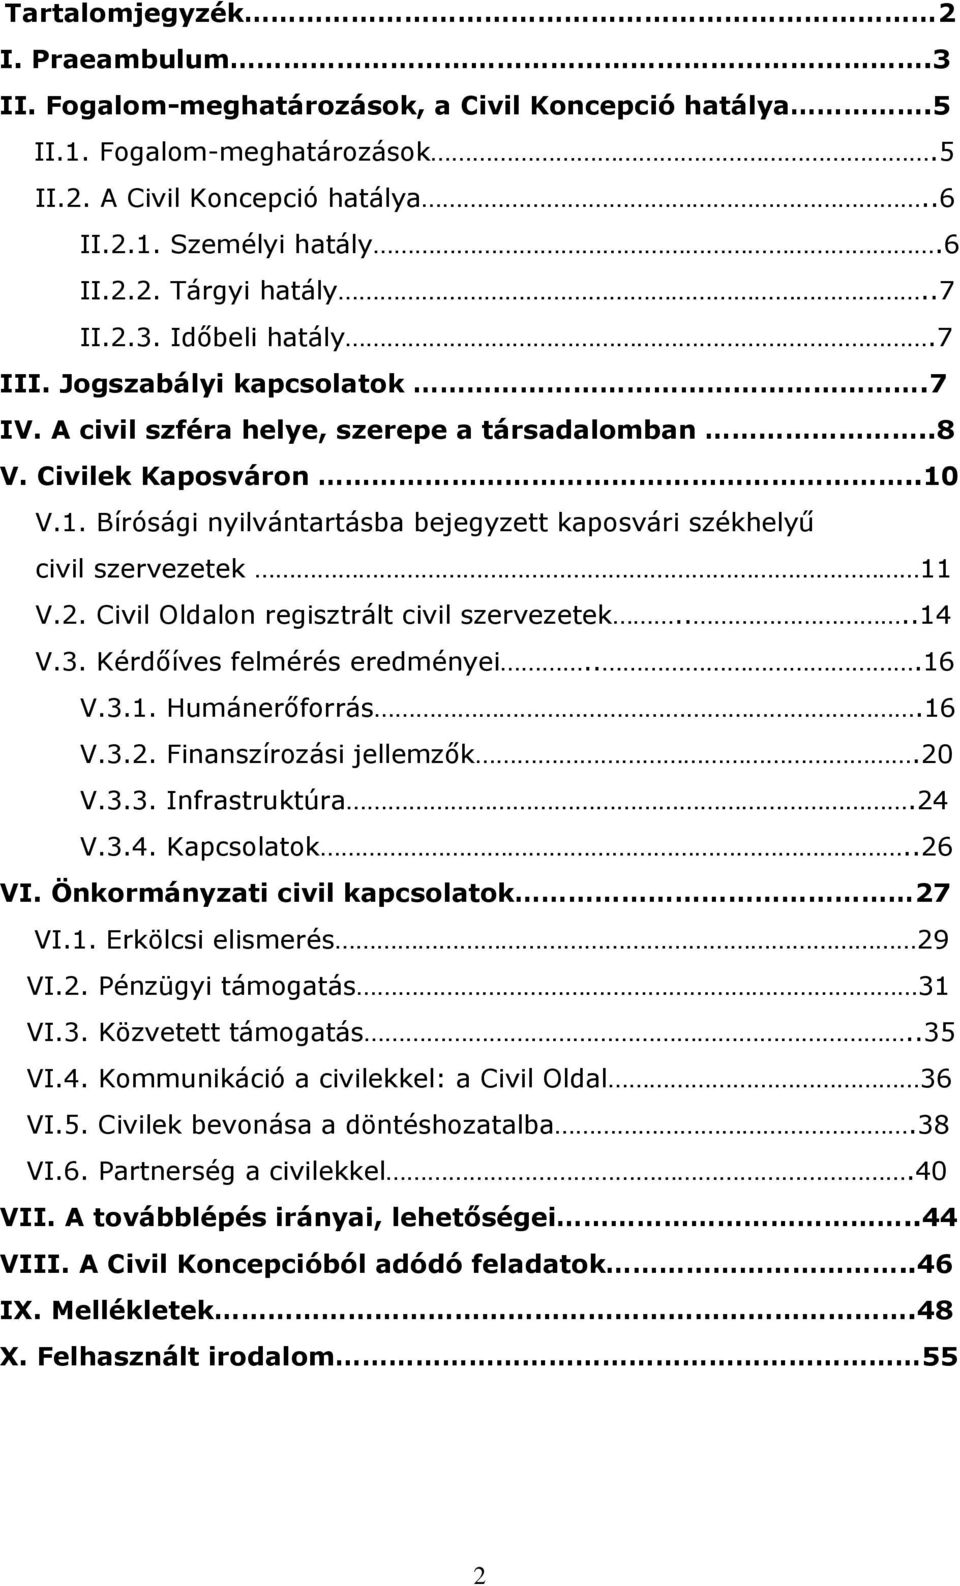 V.1. Bírósági nyilvántartásba bejegyzett kaposvári székhelyű civil szervezetek 11 V.2. Civil Oldalon regisztrált civil szervezetek....14 V.3. Kérdőíves felmérés eredményei...16 V.3.1. Humánerőforrás.